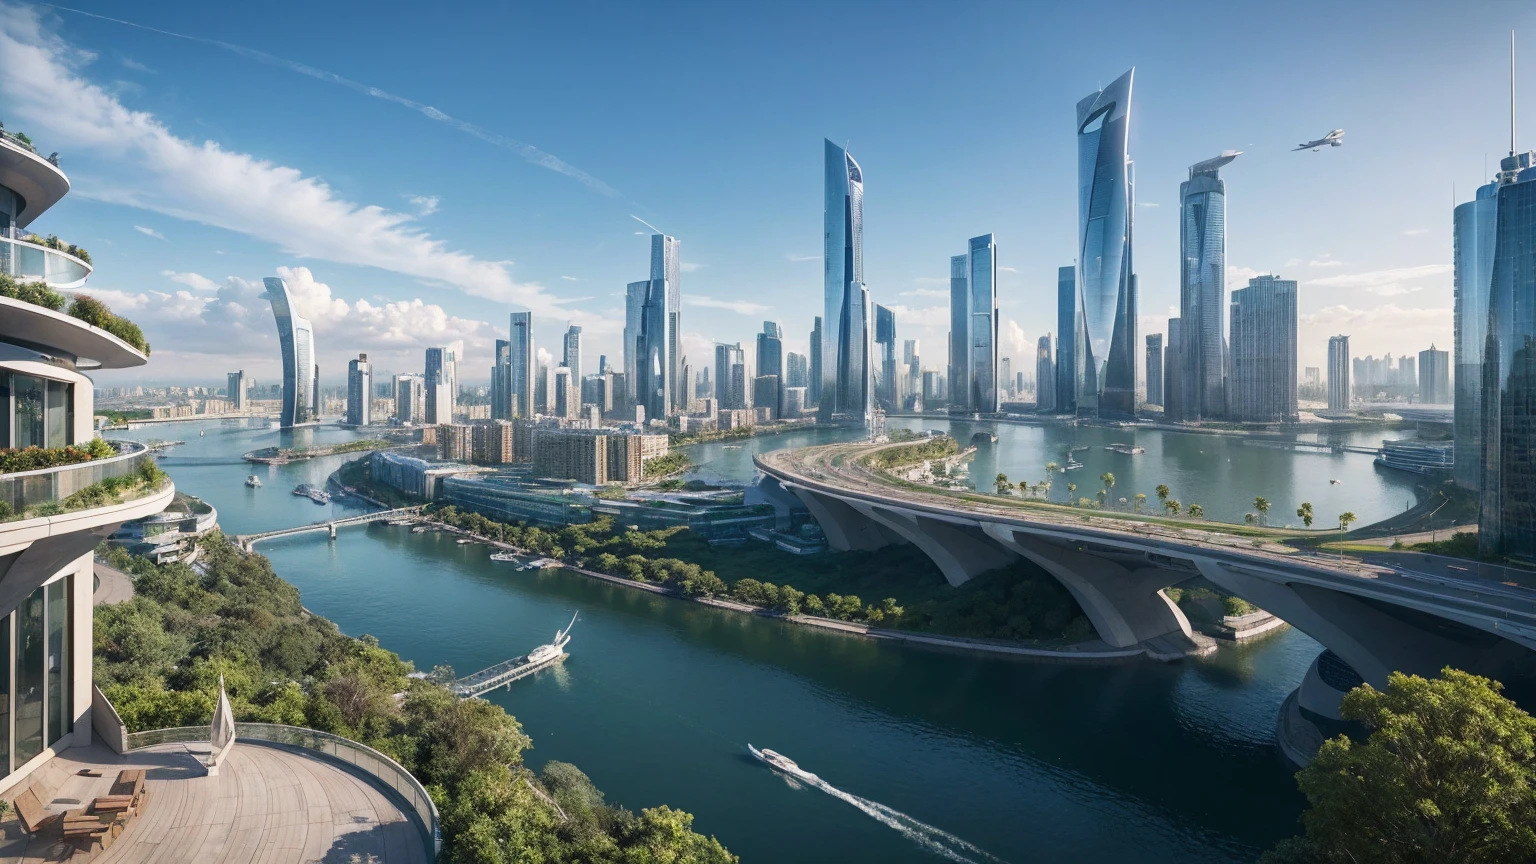 (最高品質,4k,8K,高解像度,傑作:1.2),非常に詳細な,(現実的,写実的な,写真のようにリアル:1.37),未来的な水上都市,未来のテクノロジー,巨大な都市型ハイテクタブレットプラットフォーム,飛行船,空に浮かぶ,未来都市,小さな飛行船が周囲に,ハイテク半球形プラットフォーム,カラフルなライト,高度なアーキテクチャ,モダン建築,超高層ビル,クラウドにアクセスする,美しい景色,街の眺め,印象的なデザイン,自然とシームレスに融合,活気に満ちた活気のある雰囲気,未来の交通システム,駐車禁止,透明なパス,豊かな緑,スカイガーデン,滝,壮大なスカイライン,水面に映る,輝く川,建築の革新,未来的な高層ビル,透明ドーム,建物の形状が珍しい,高架歩道,印象的なスカイライン,光るライト,未来のテクノロジー,ミニマリストデザイン,景勝地,全景,雲を貫く塔,鮮やかな色彩,壮大な日の出,壮大な夕日,まばゆい光のディスプレイ,魔法のような雰囲気,未来都市,都会のユートピア,ラグジュアリーライフスタイル,革新的なエネルギー,持続可能な発展,スマートシティテクノロジー,高度なインフラ,静かな雰囲気,自然とテクノロジーは調和して共存する,素晴らしい街並み,前例のない都市計画,建築は自然とシームレスにつながる,ハイテク都市,最先端のエンジニアリングの驚異,都市生活の未来,先見性のある建築コンセプト,エネルギー効率の高い建物,環境との調和,雲の上に浮かぶ街,ユートピアの夢が現実になる,可能性は無限大,最先端の交通ネットワーク,グリーンエネルギーの統合,革新的な素材,印象的なホログラフィックディスプレイ,高度な通信システム,息を呑むような空中からの眺め,静かで平和な環境,モダニズムの美学,天上の美しさ